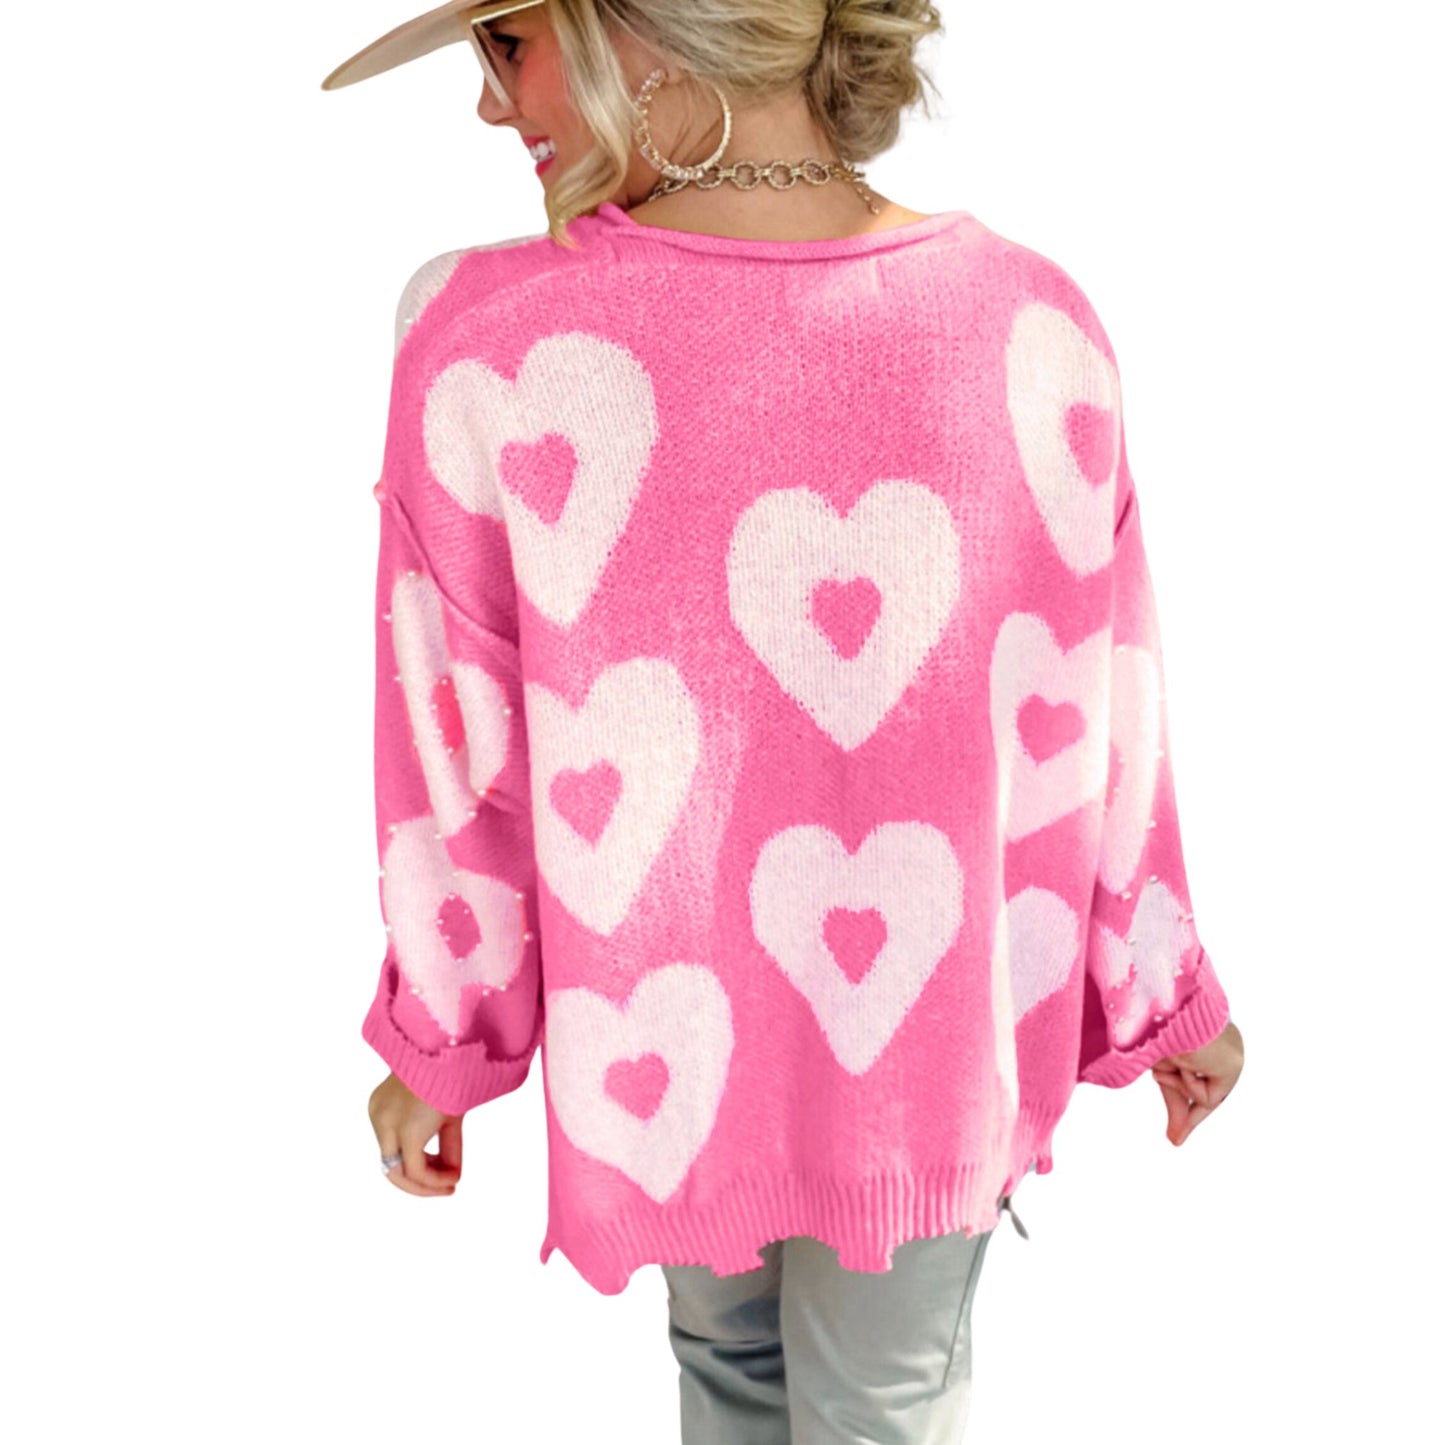 Beaded pearl heart sweater - Lavish life LLC 